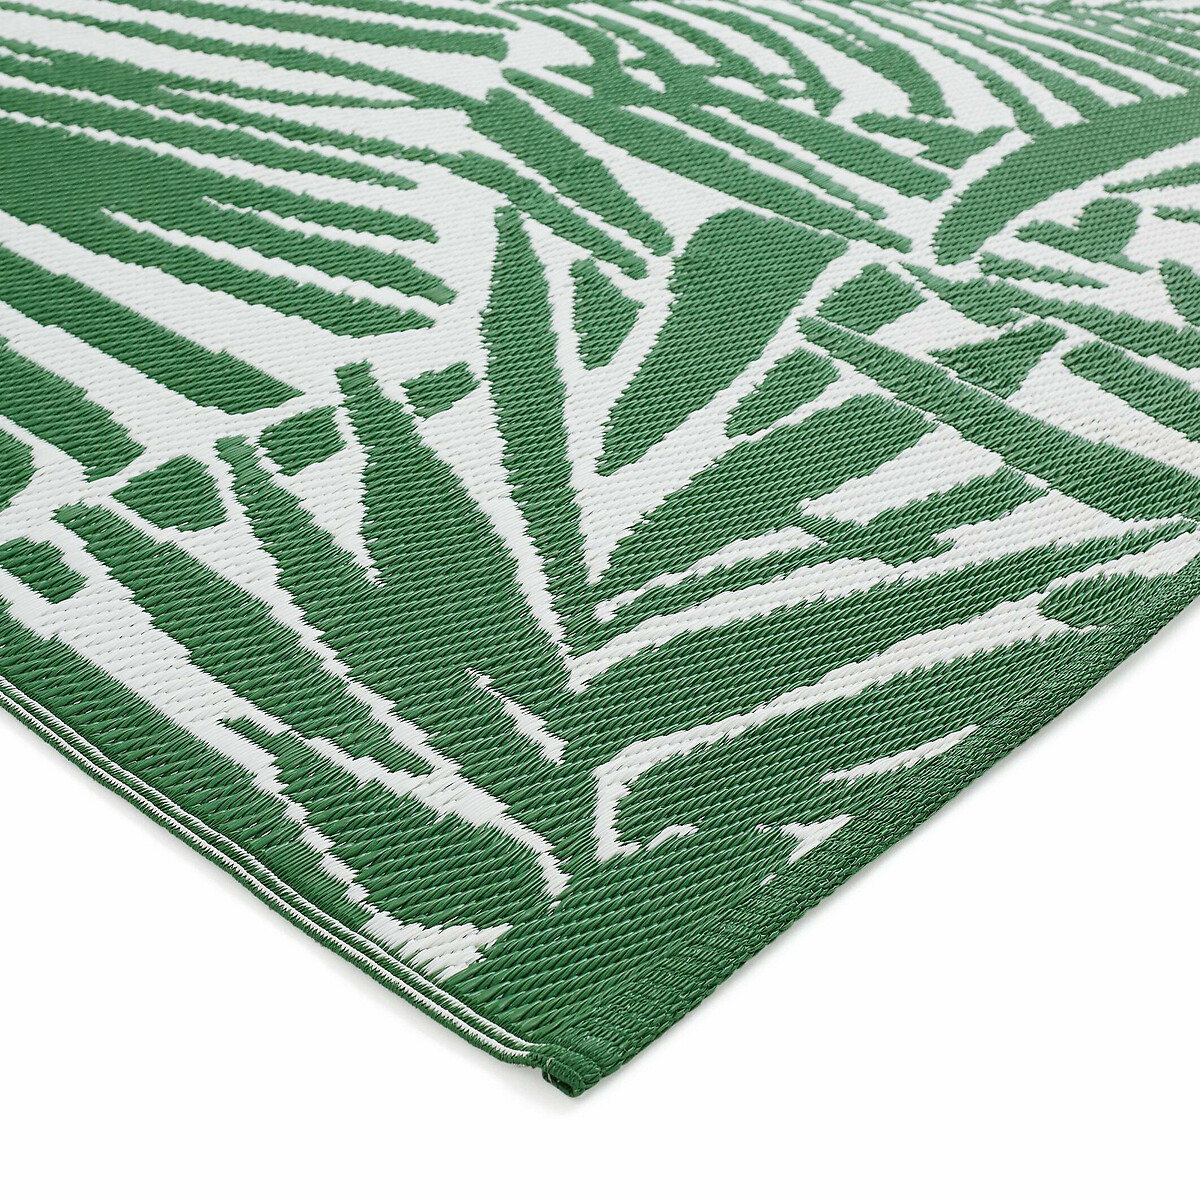 Ковер LaRedoute С рисунком из листьев пальмы IndoorOutdoor Catalpa 150 x 230 см зеленый, размер 150 x 230 см - фото 2